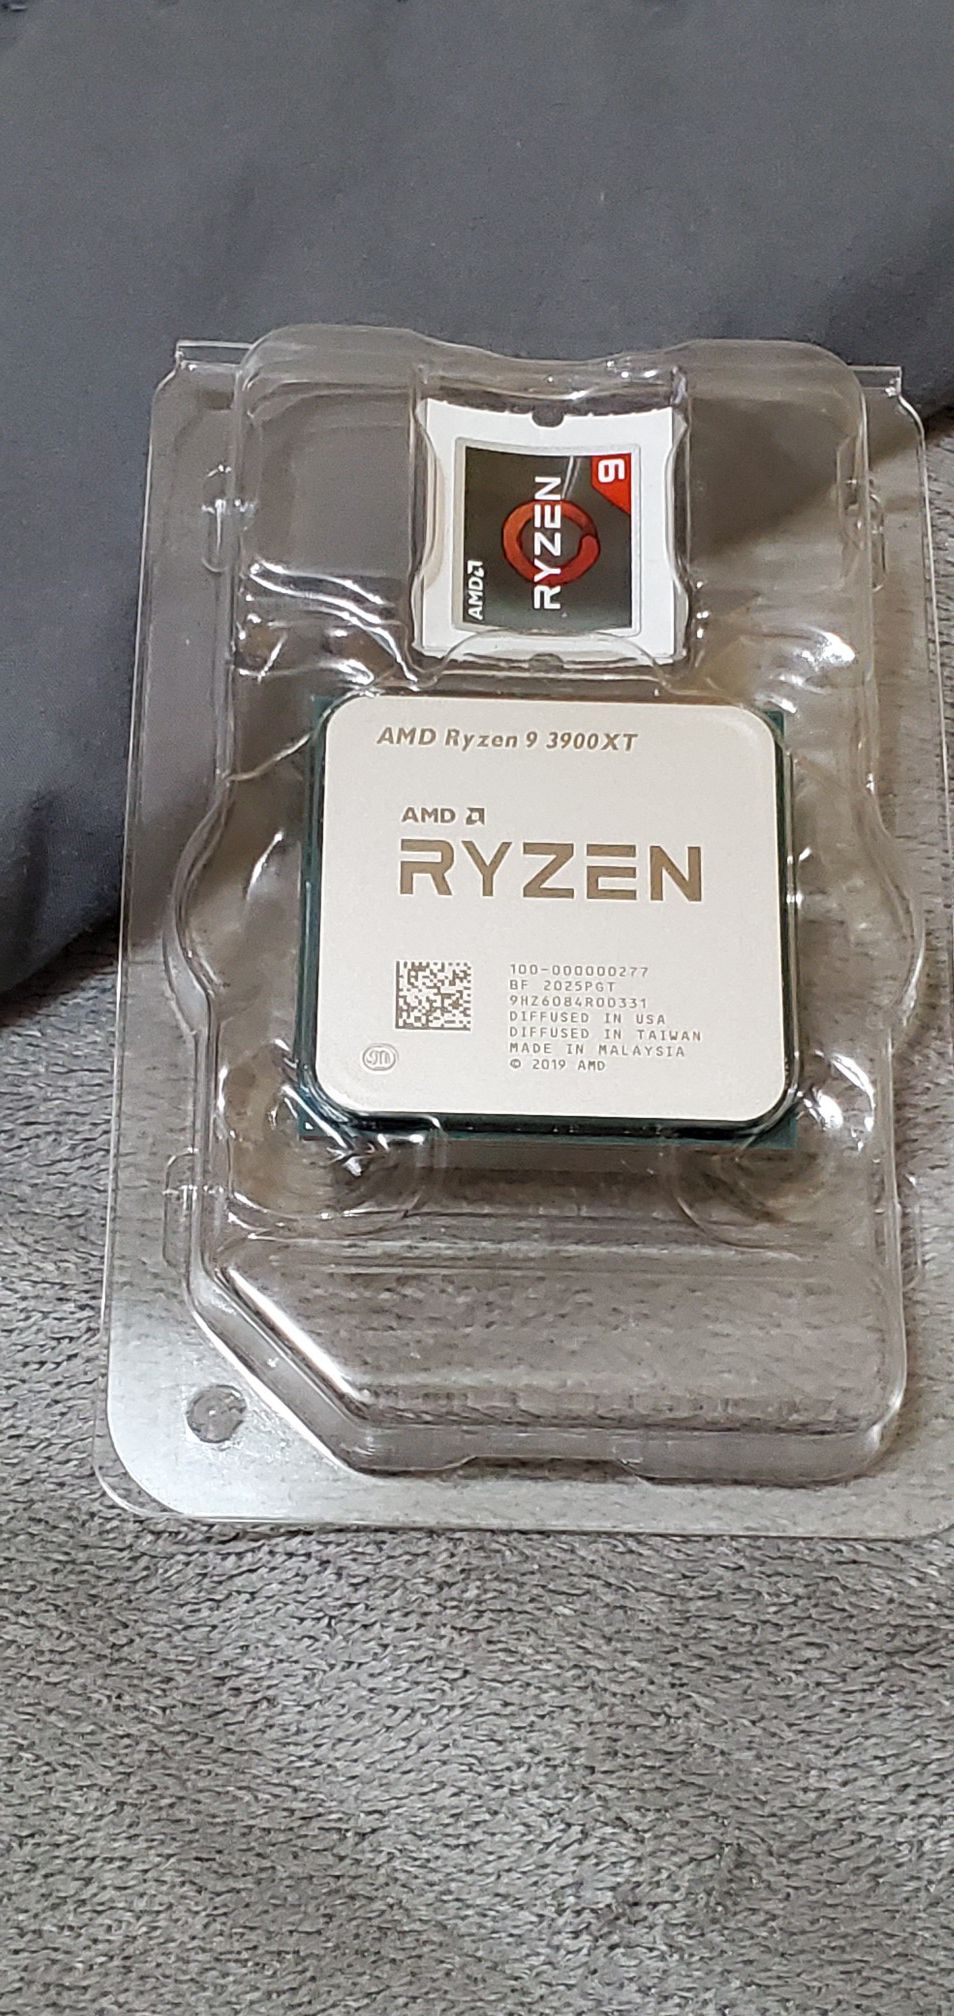 AMD Ryzen 9 3900XT - New/Unused